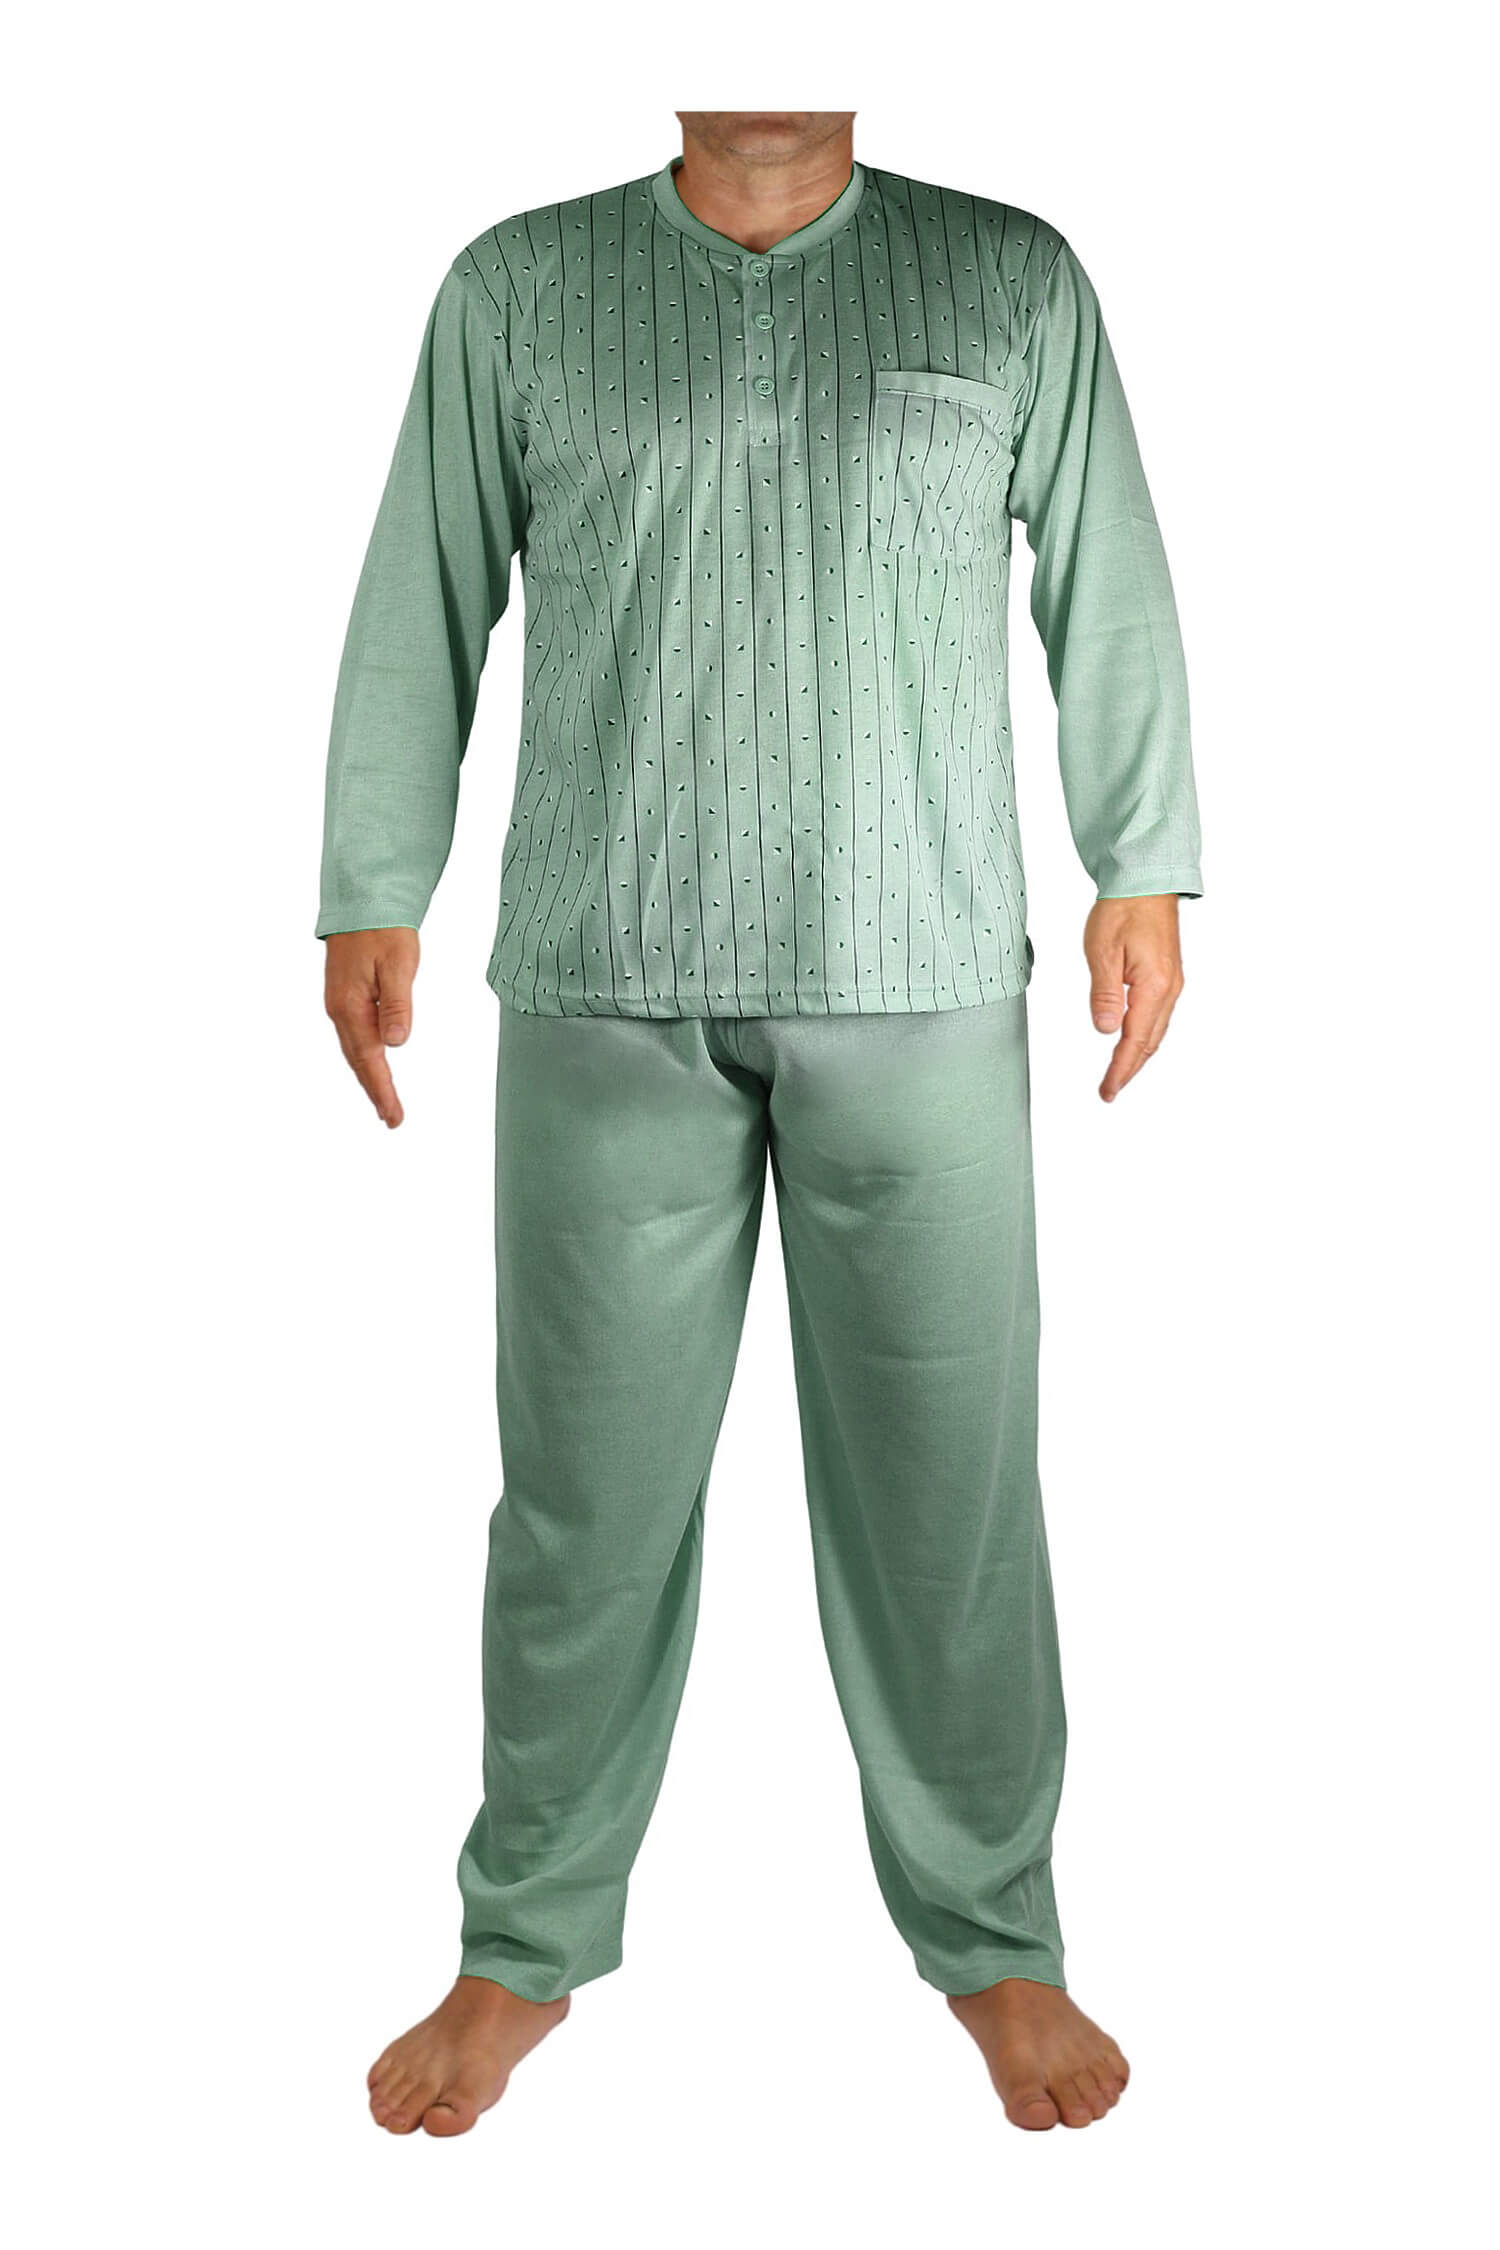 Ludvík pyžamo pánské dlouhé V1974 3XL zelená